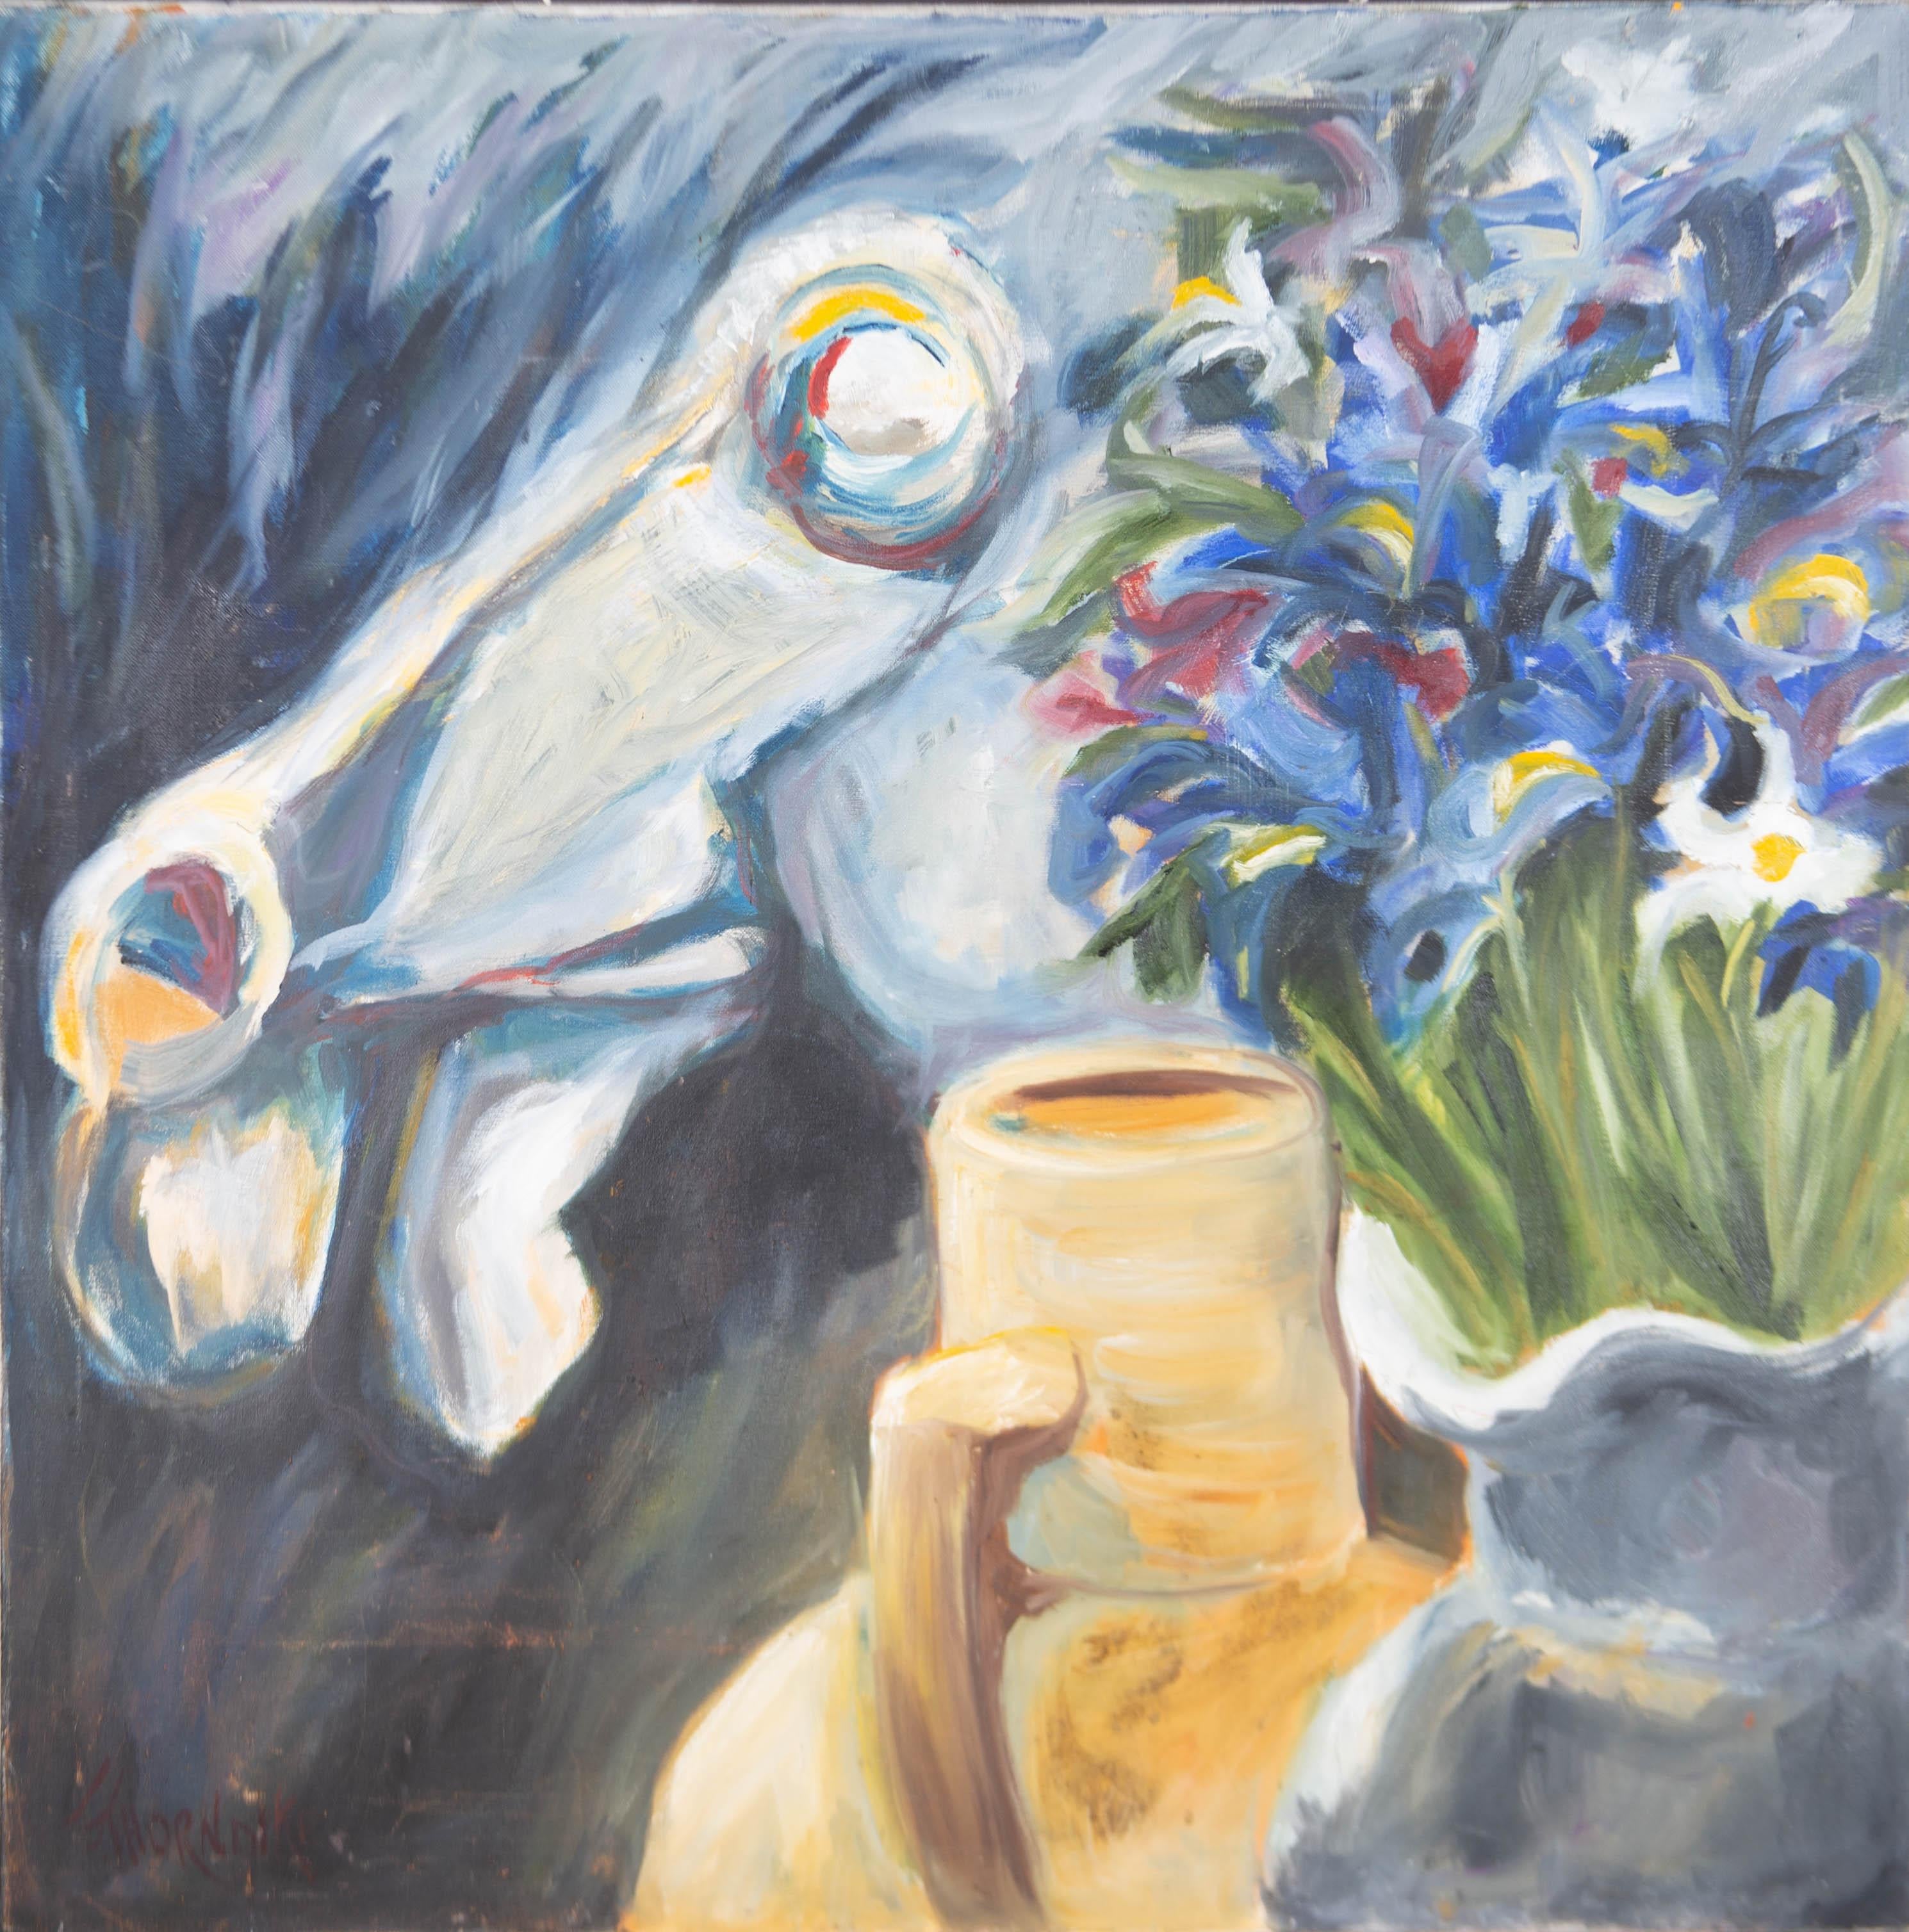 Une interprétation impressionniste impulsive d'un vase de fleurs fluide.

Signé dans le coin inférieur gauche.

Sur toile sur châssis.